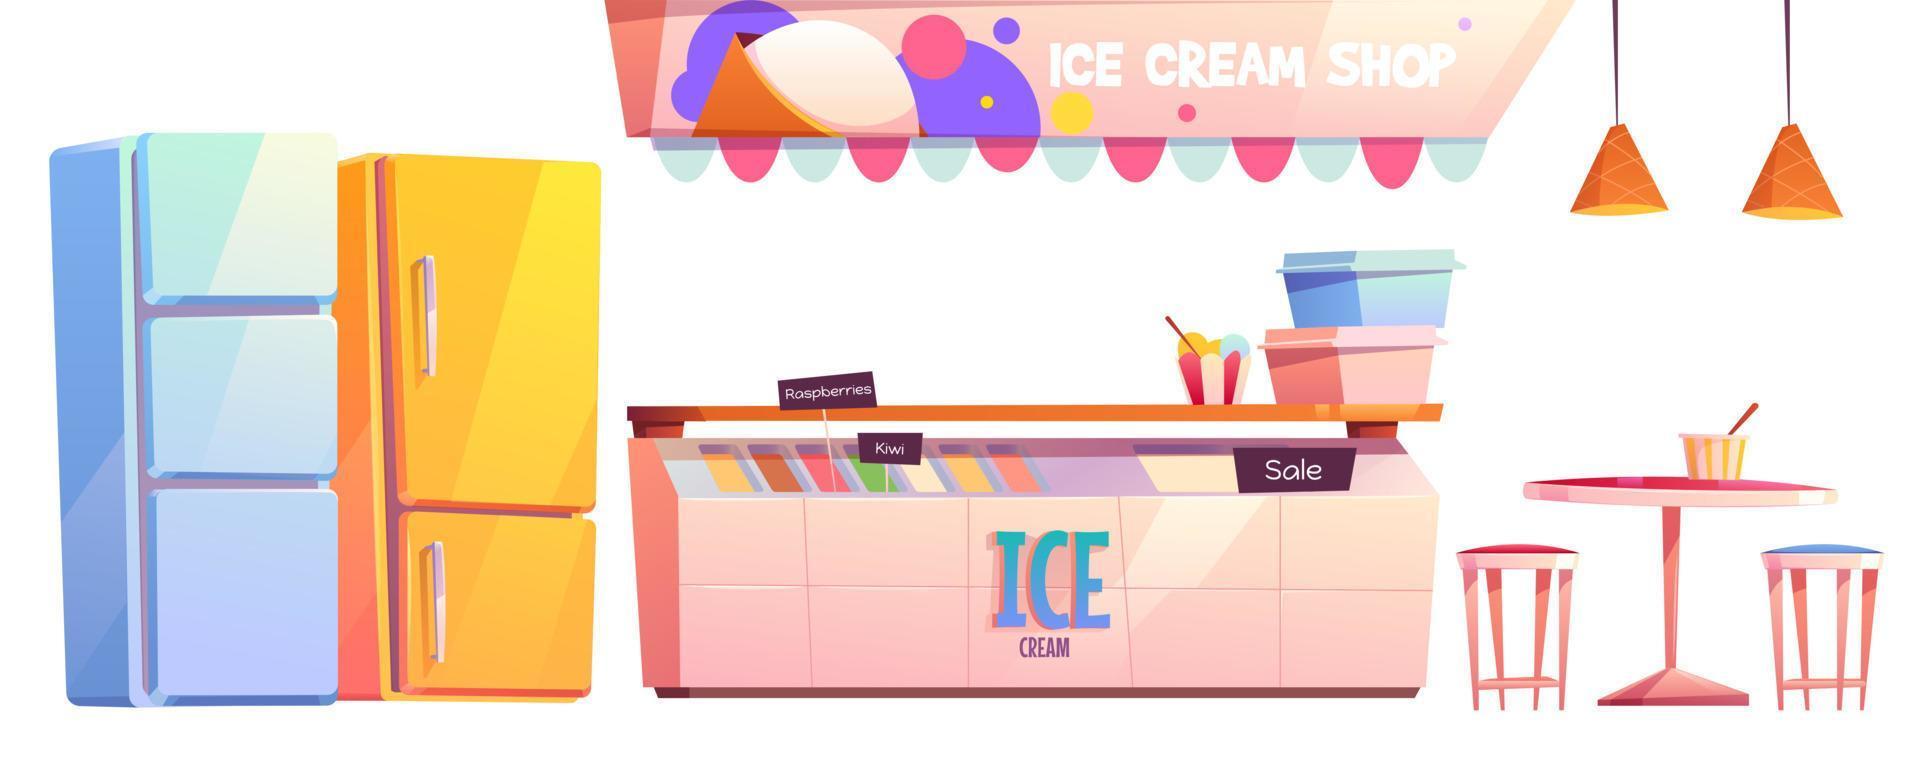 hielo crema tienda o café interior equipo conjunto vector